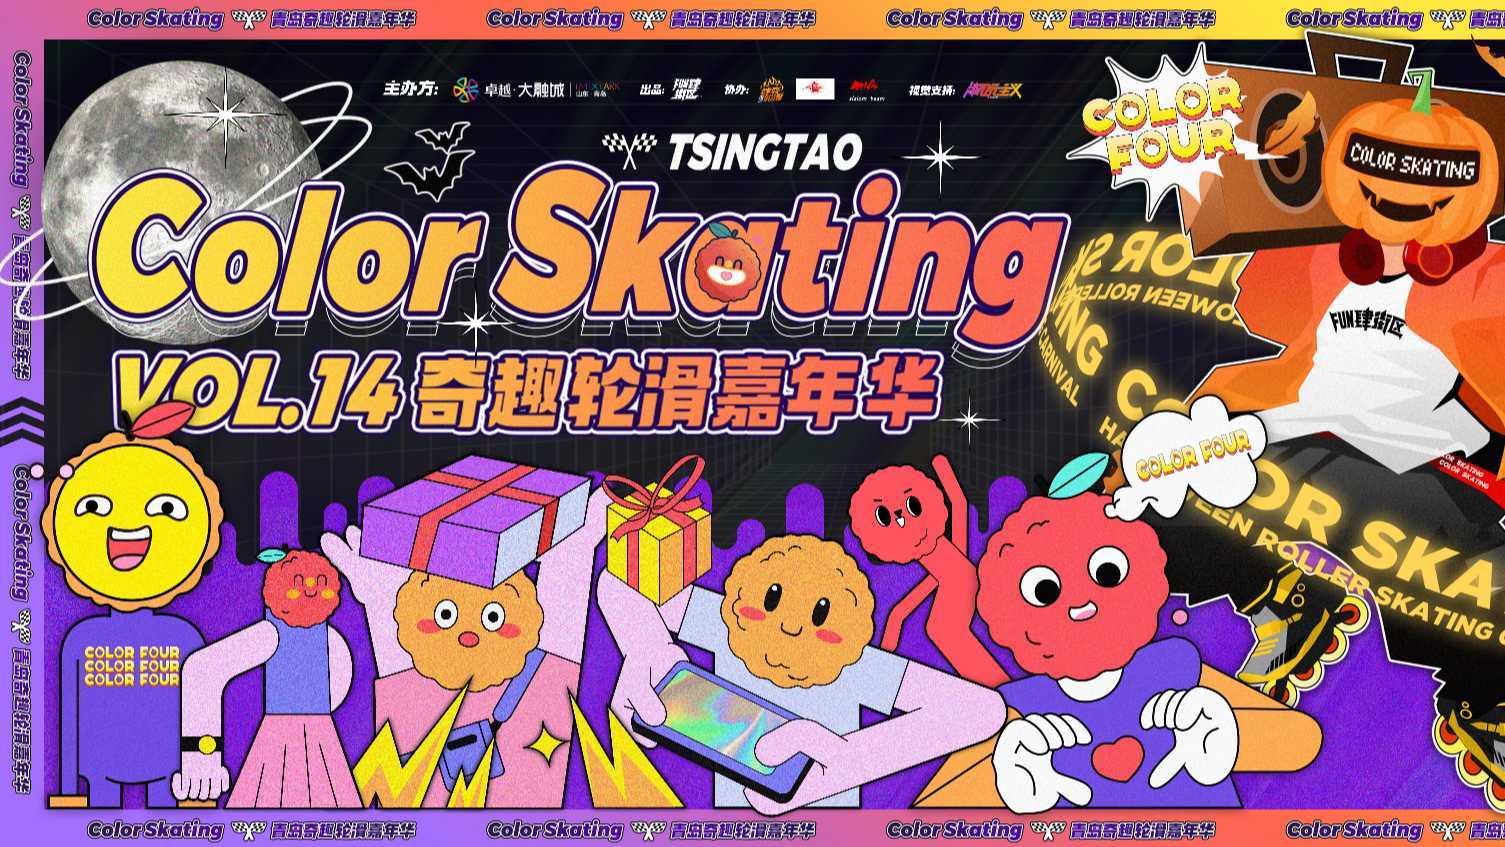 为热爱·致前行 I 2021青岛COLOR SKATING轮滑节-官方回顾视频。